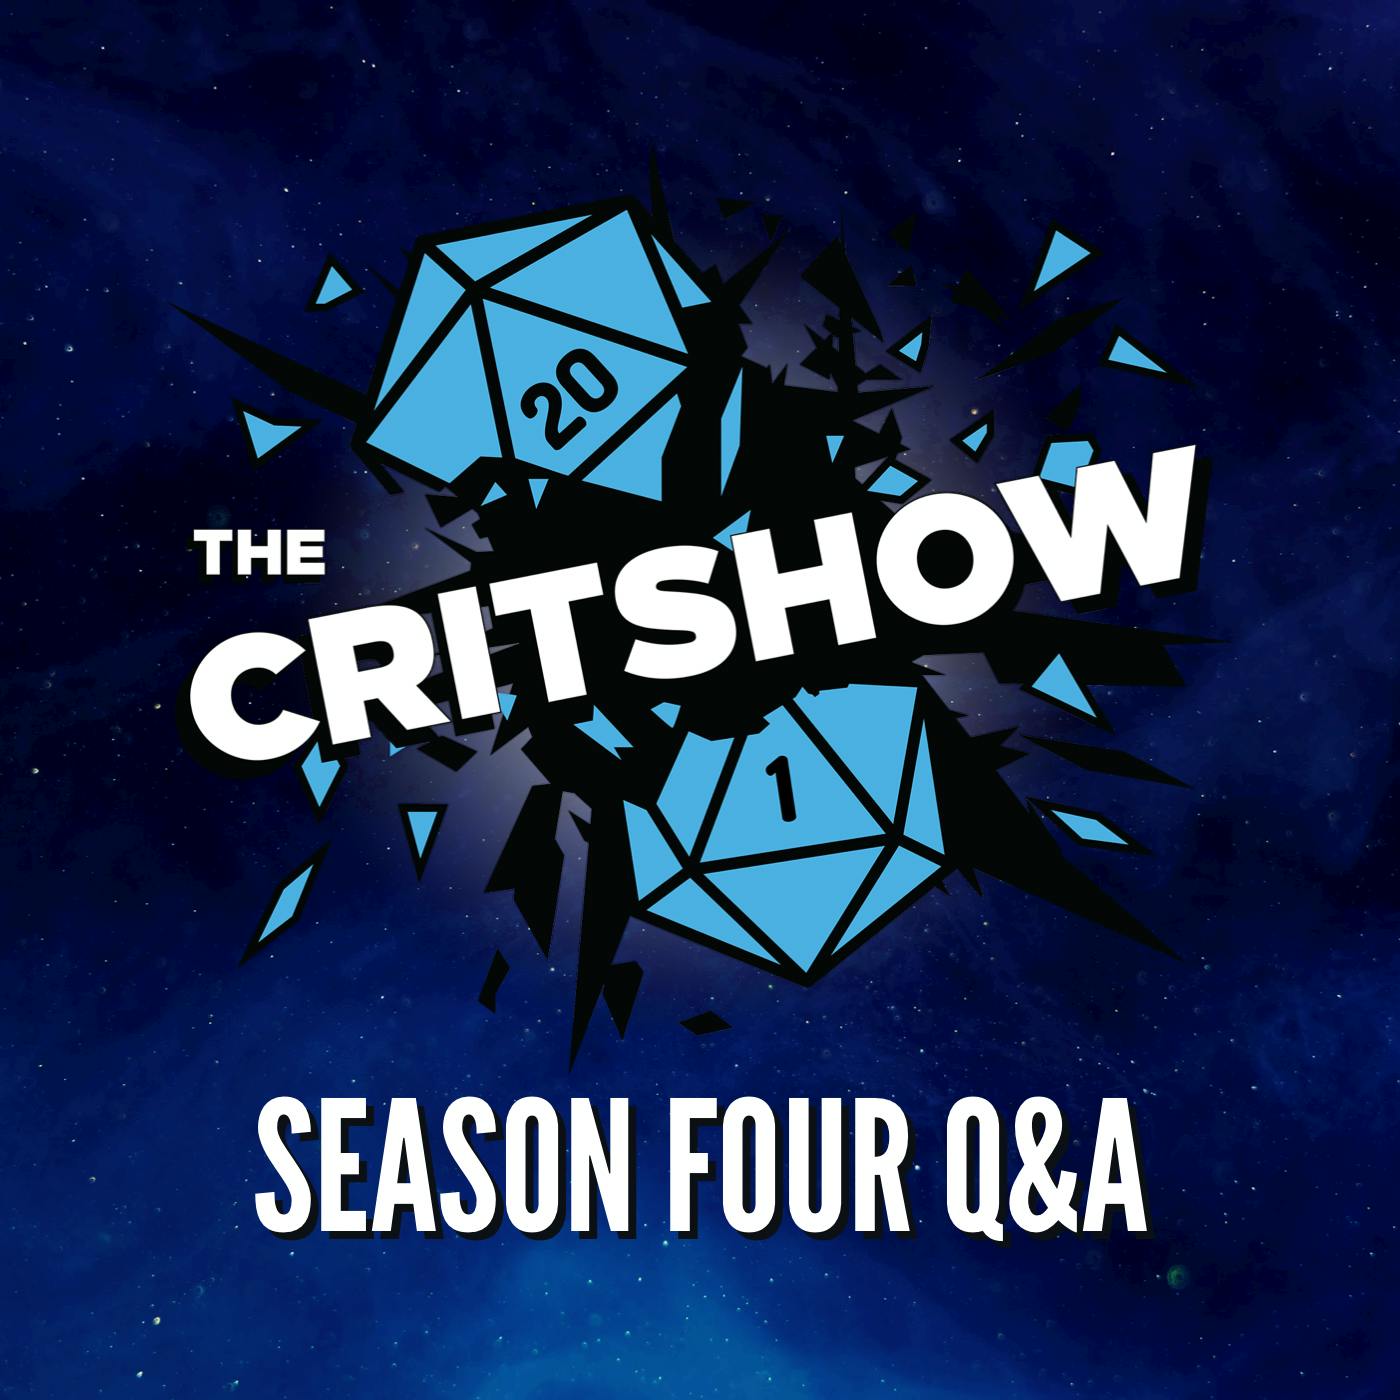 The Critshow: Season 4 Q/A